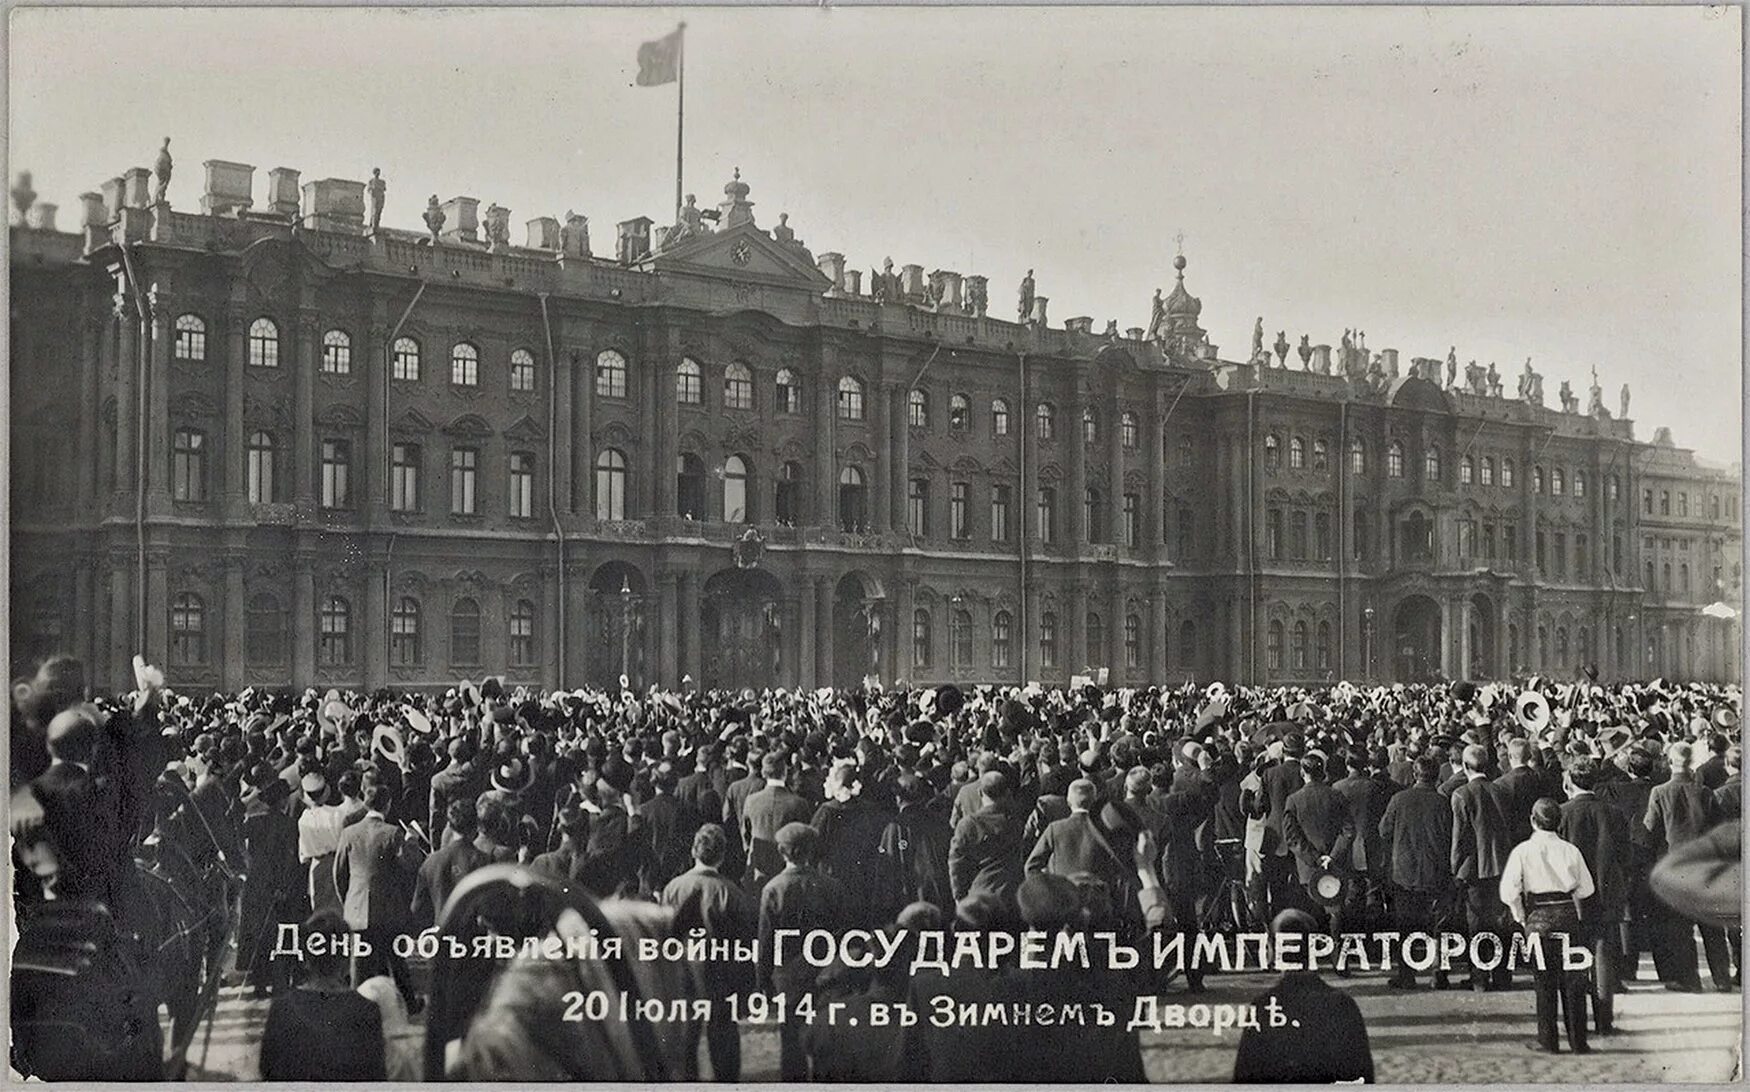 Дворцовая площадь объявление войны 1914.